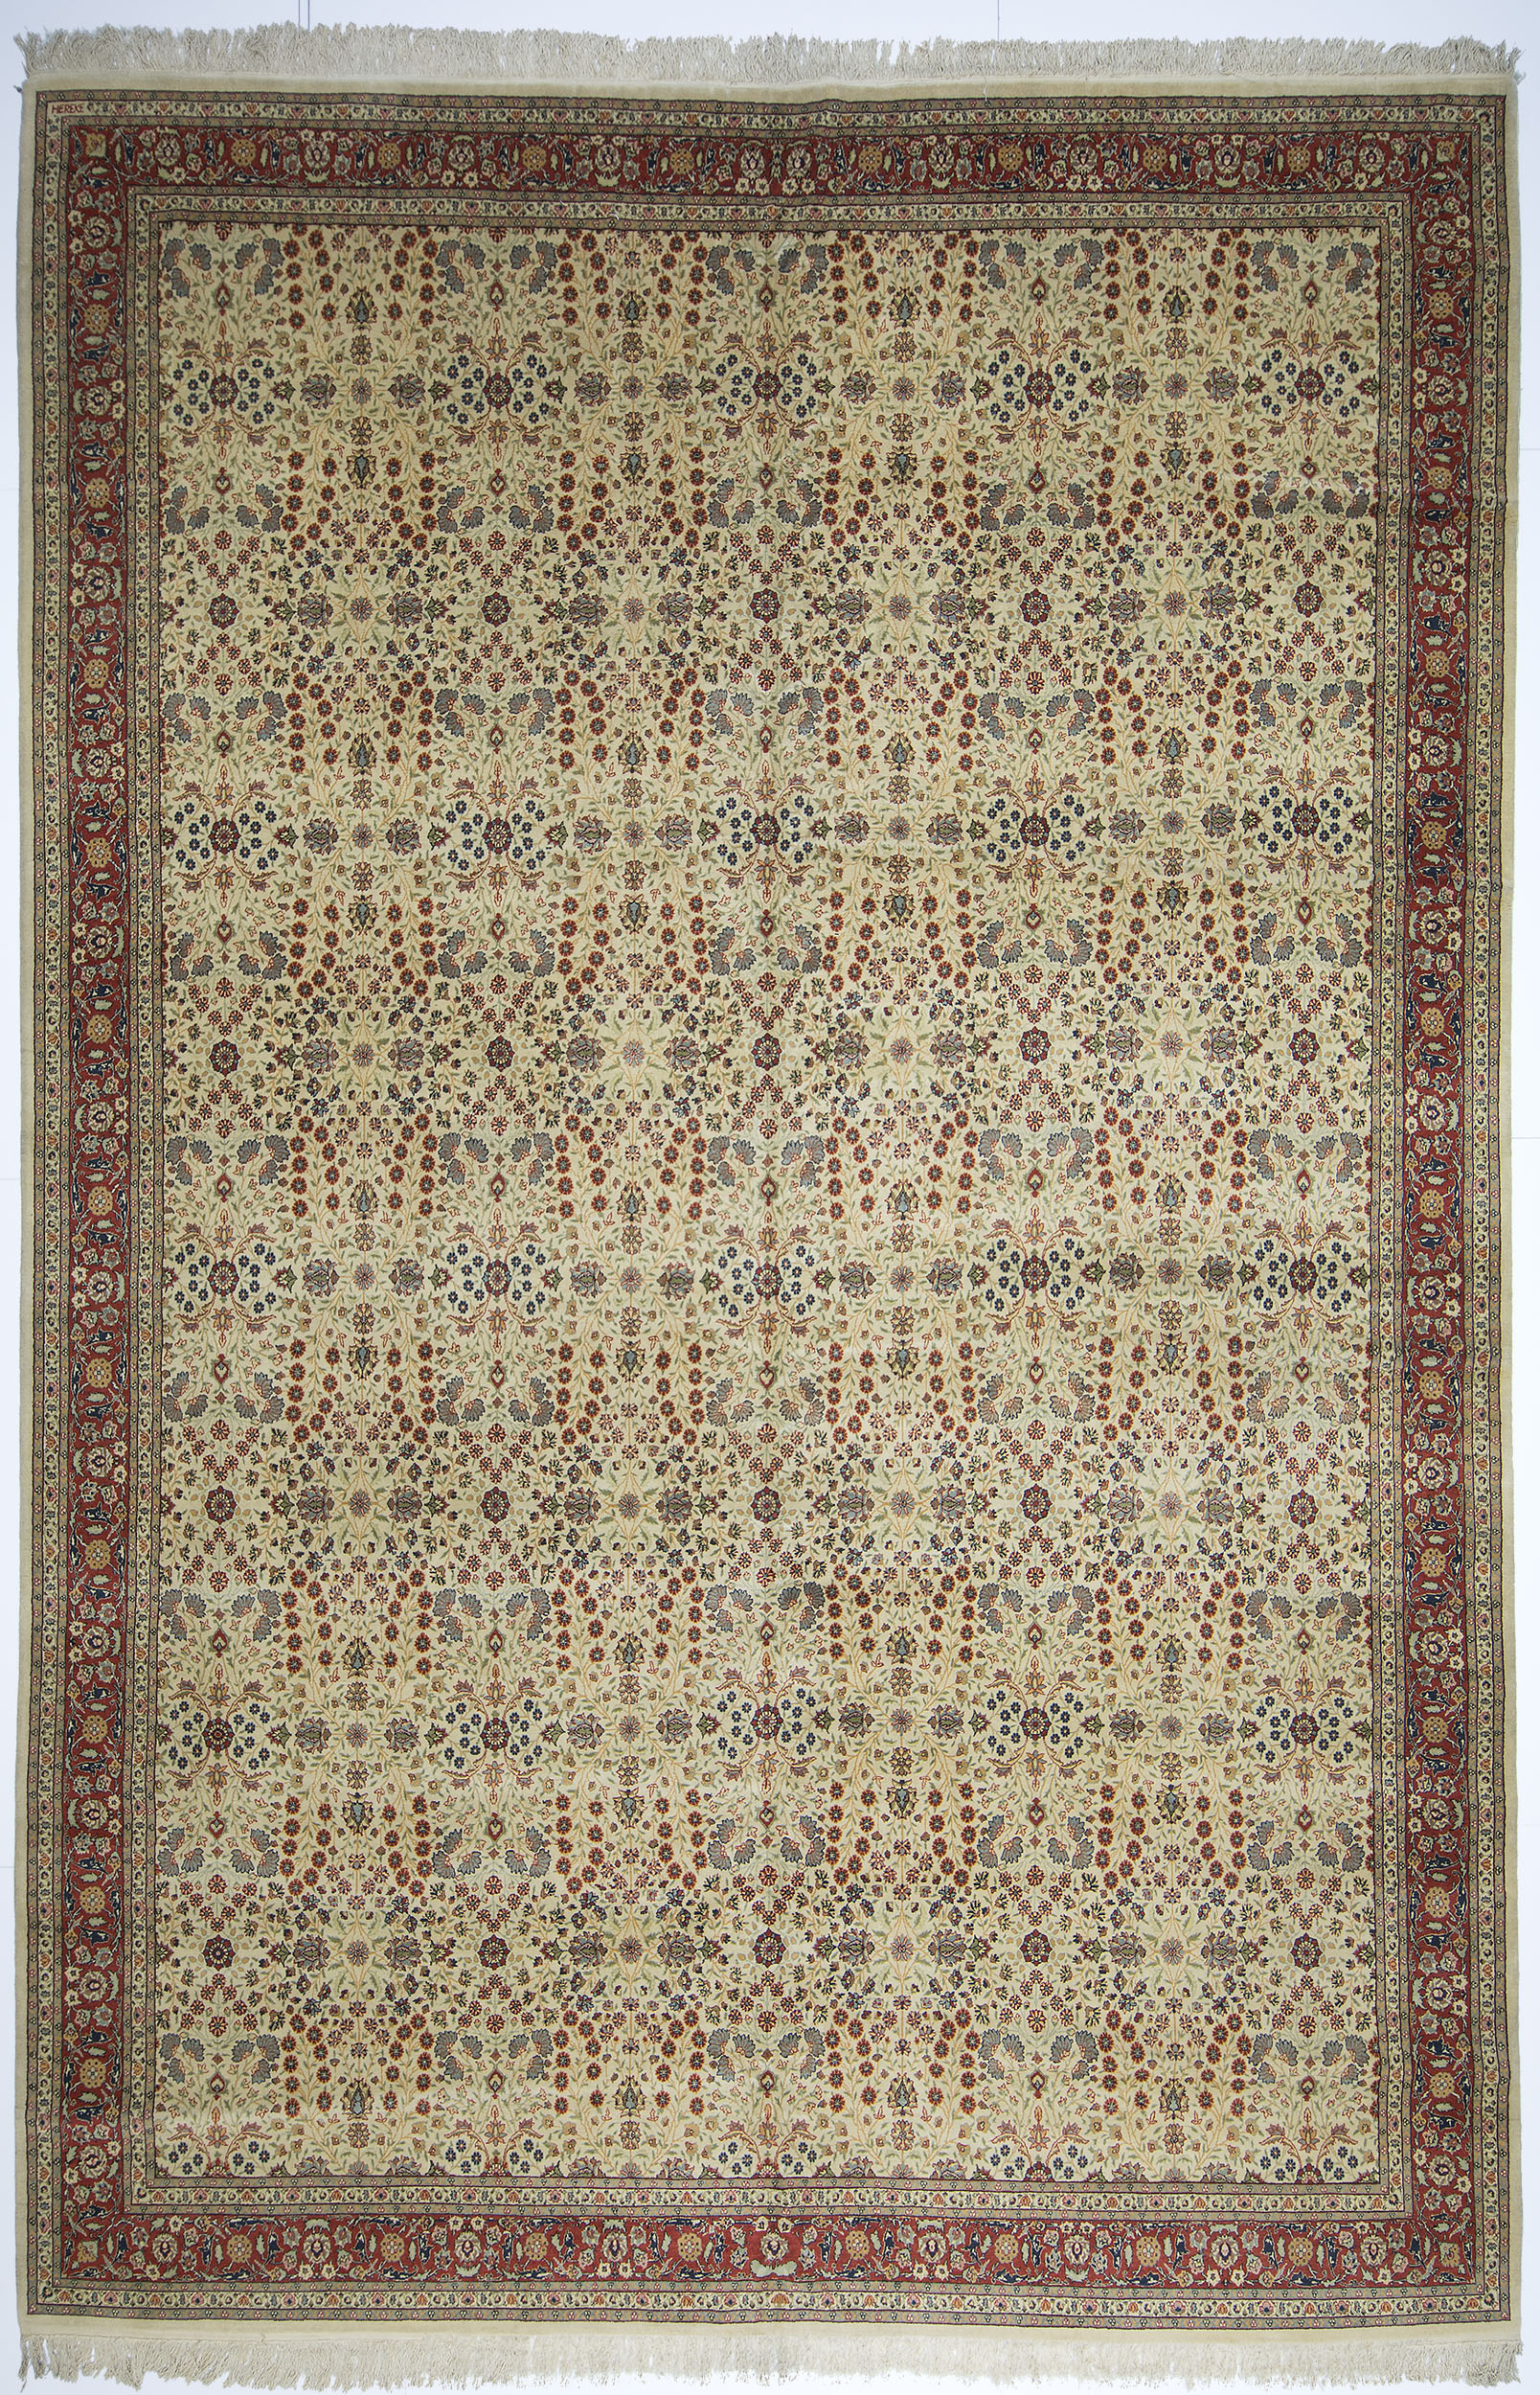 Hereke Carpet 16' 2" x 10' 9" 